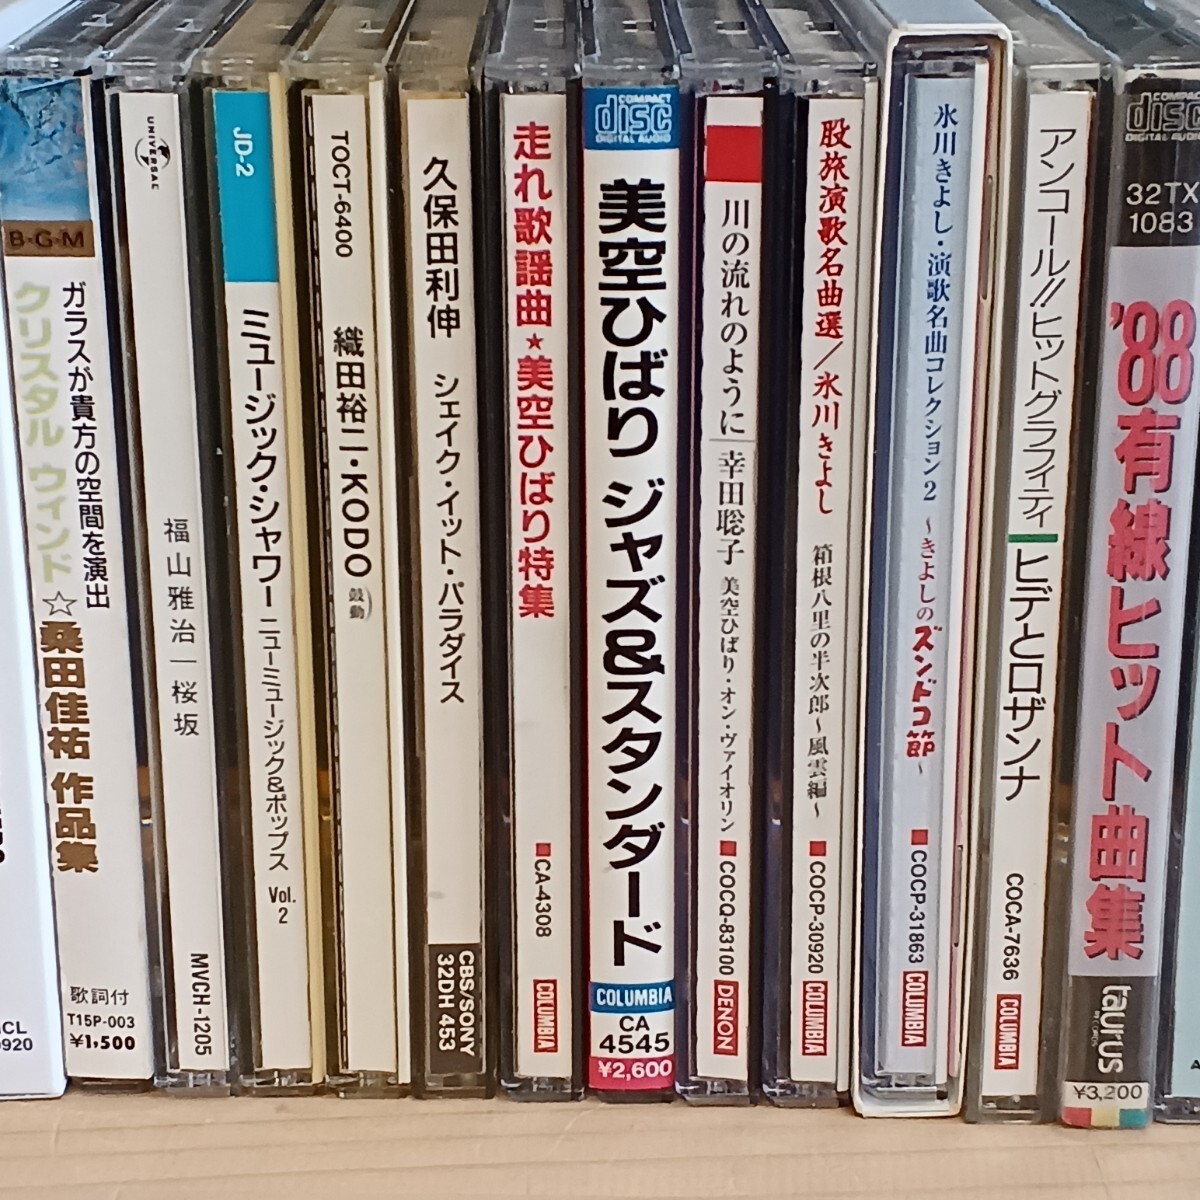 CD совместно Японская музыка, западная музыка жанр различный Sakamoto Ryuichi тутовик рисовое поле .. Matsuda Seiko прекрасный пустой ... др. все 57 название (8cmCD8 название ) не проверено текущее состояние товар 